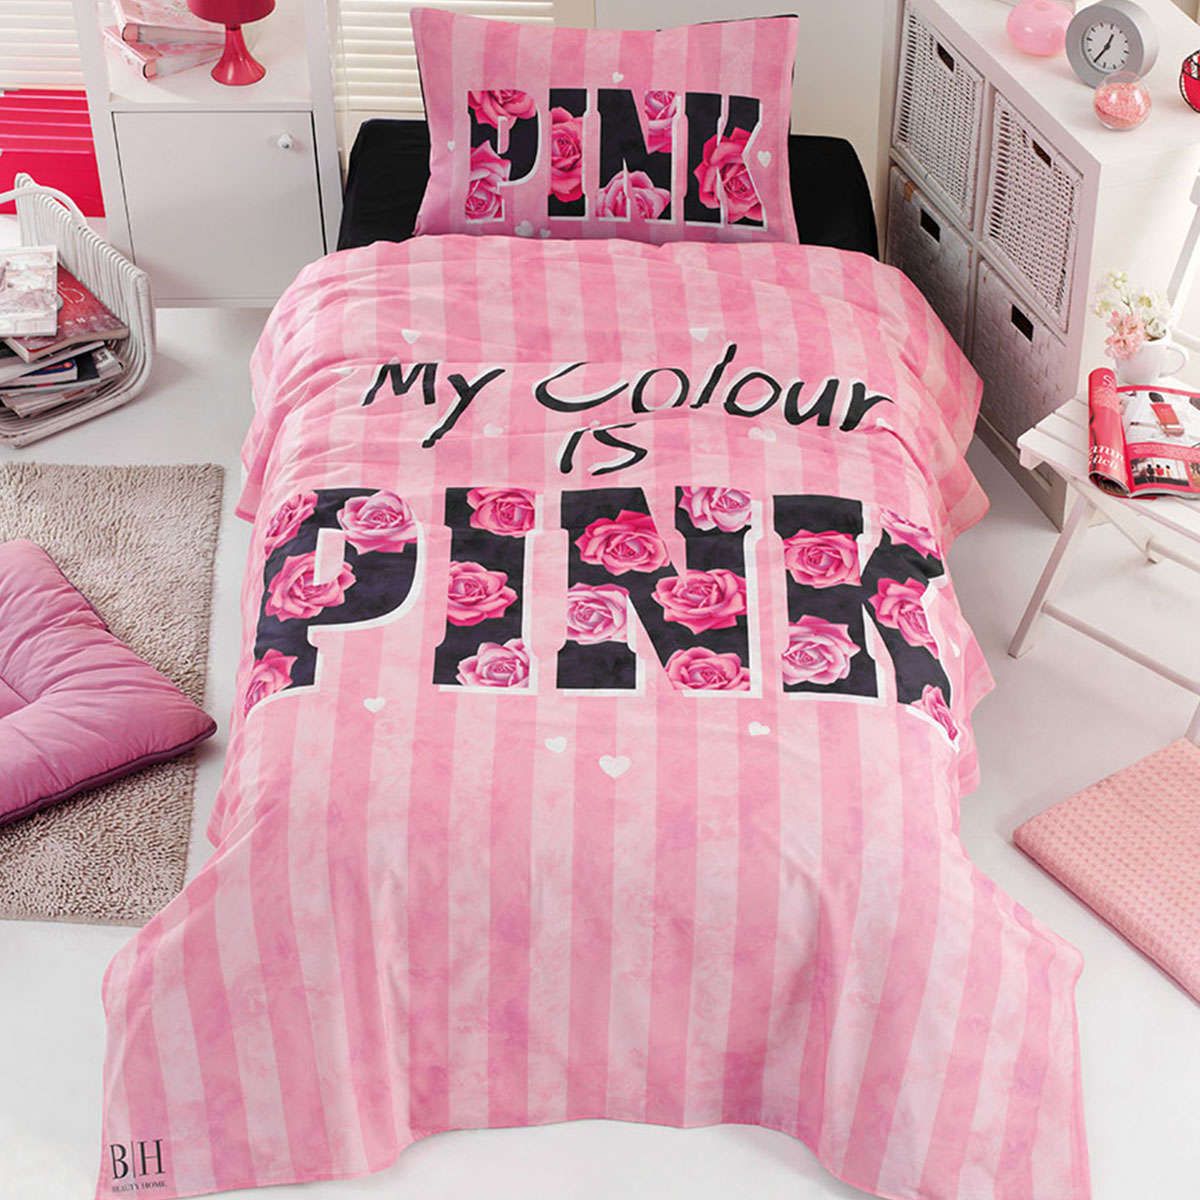 Παιδικό πάπλωμα μονό σετ Pink Art 6113 pink beauty home